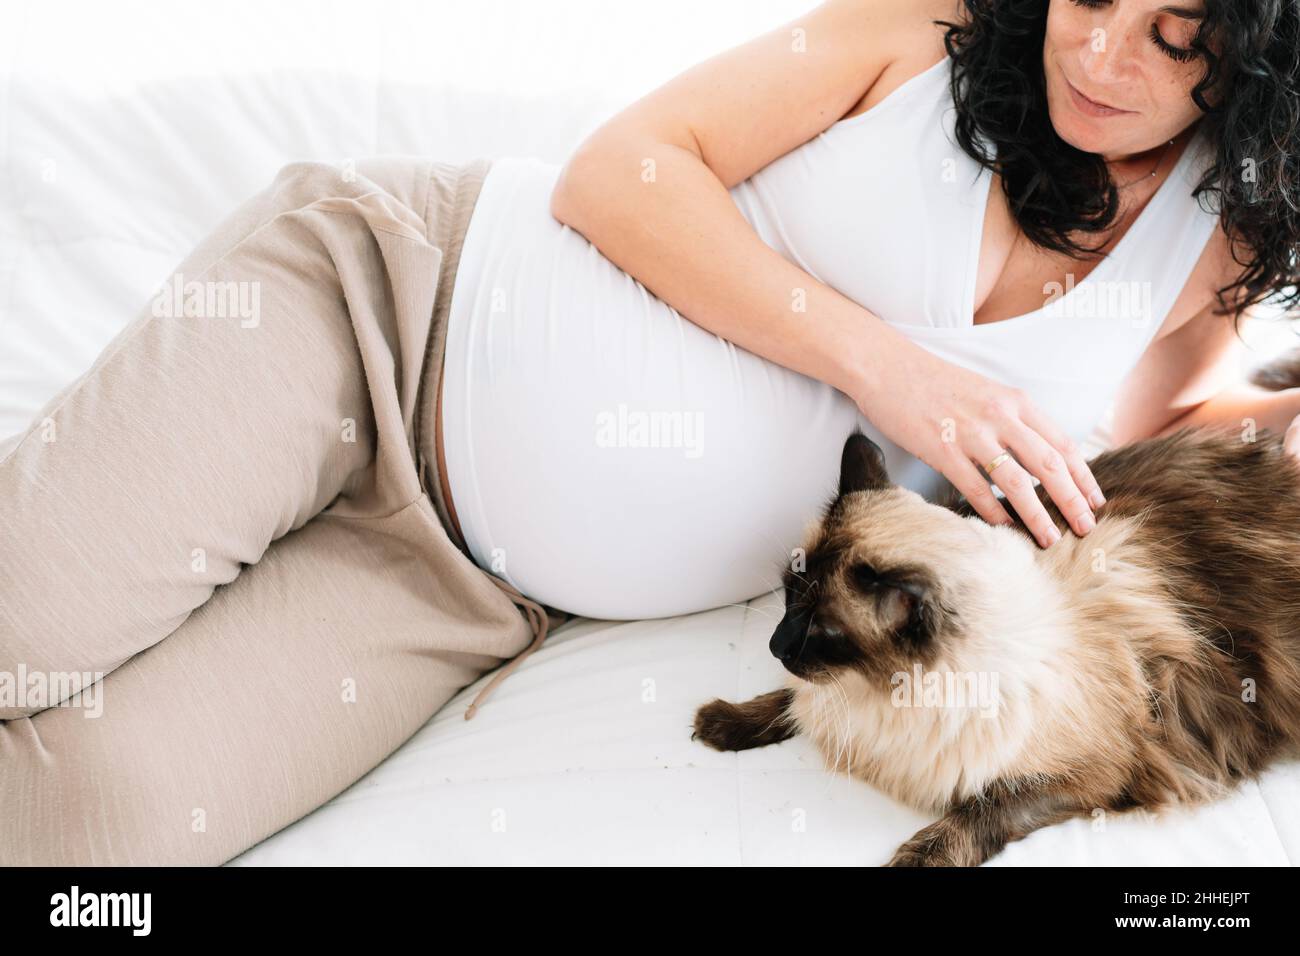 Jeune femme enceinte souriante, couchée sur le lit, qui lui a fait tomber son chat. Concept grossesse et animaux domestiques Banque D'Images